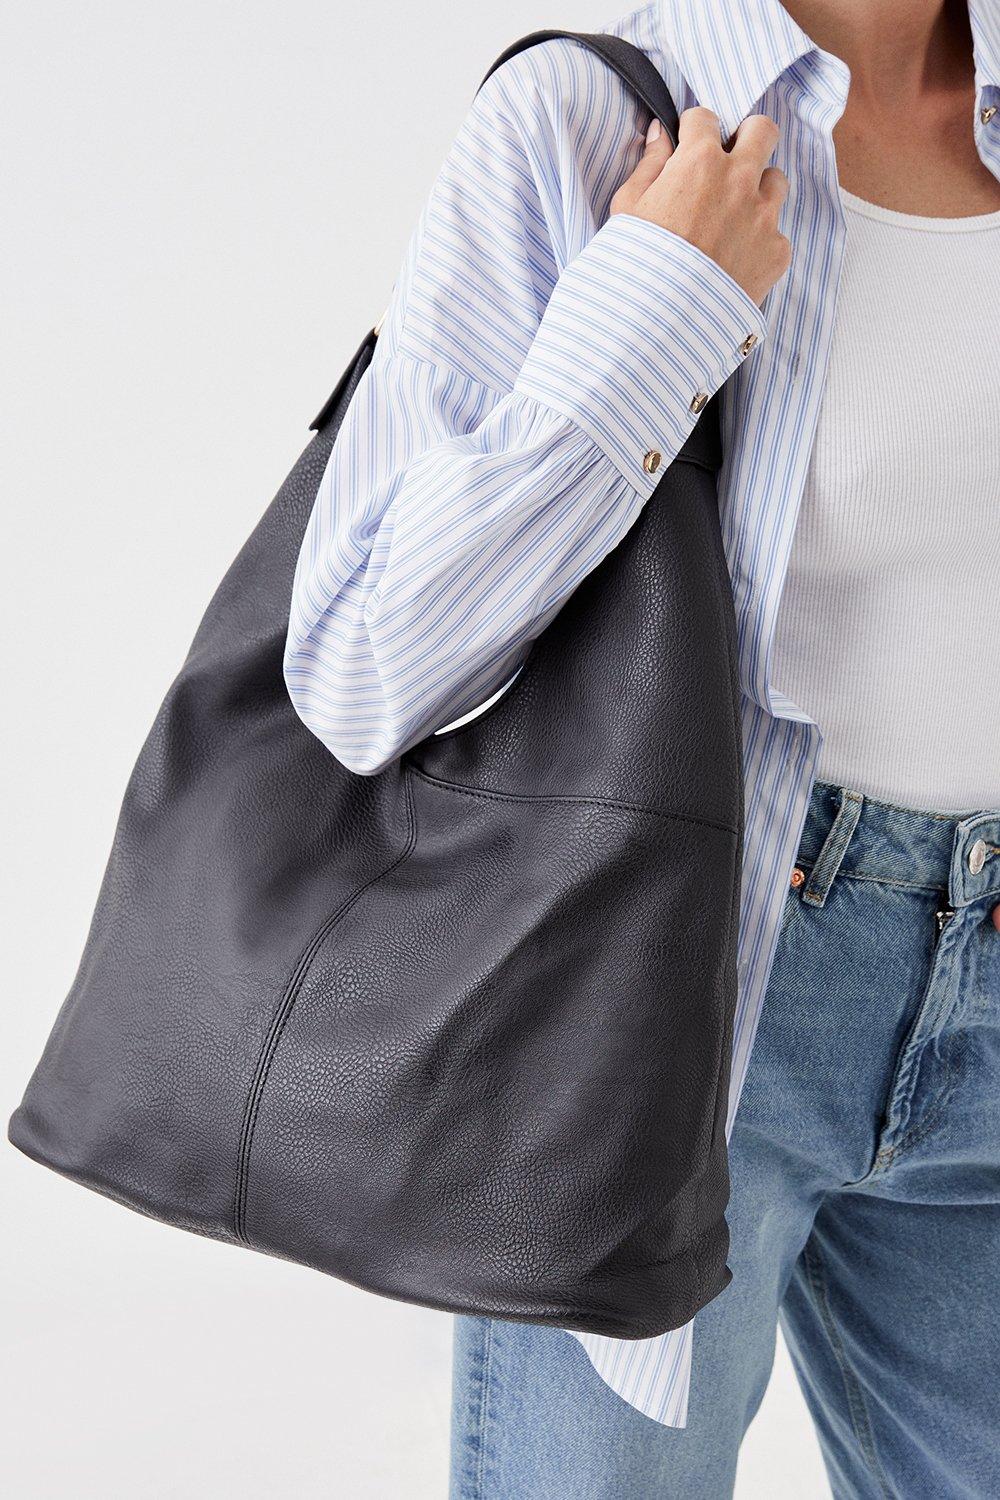 Большая сумка через плечо Tess с напуском Dorothy Perkins, черный серебристая металлическая рама для сумок рюкзаков сумок кошельков металлическая алюминиевая рама для сумок аксессуары для сумок детали